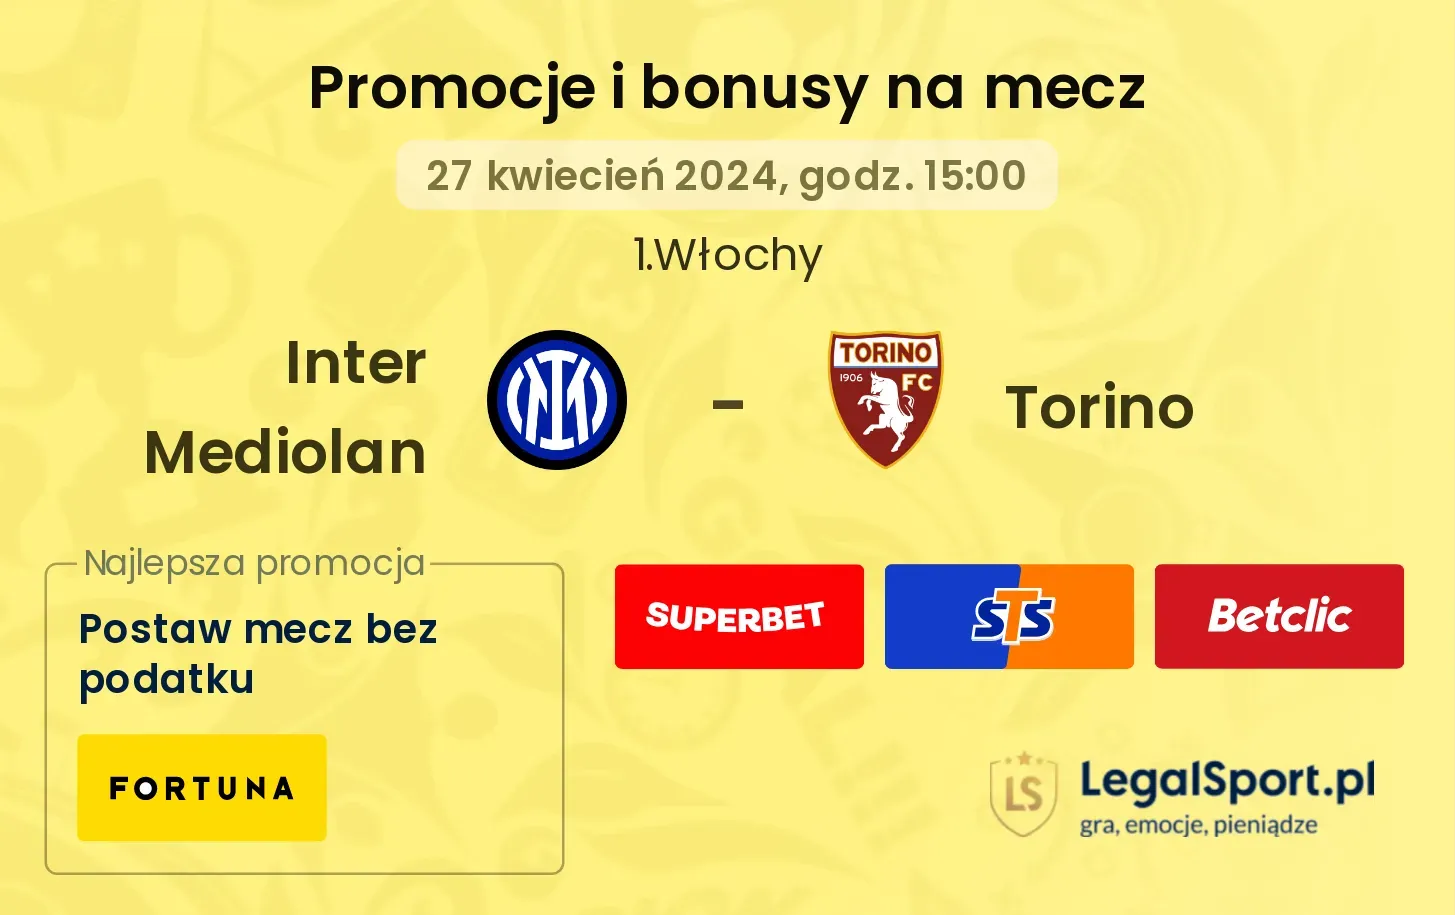 Inter Mediolan - Torino promocje i bonusy (27.04, 15:00)